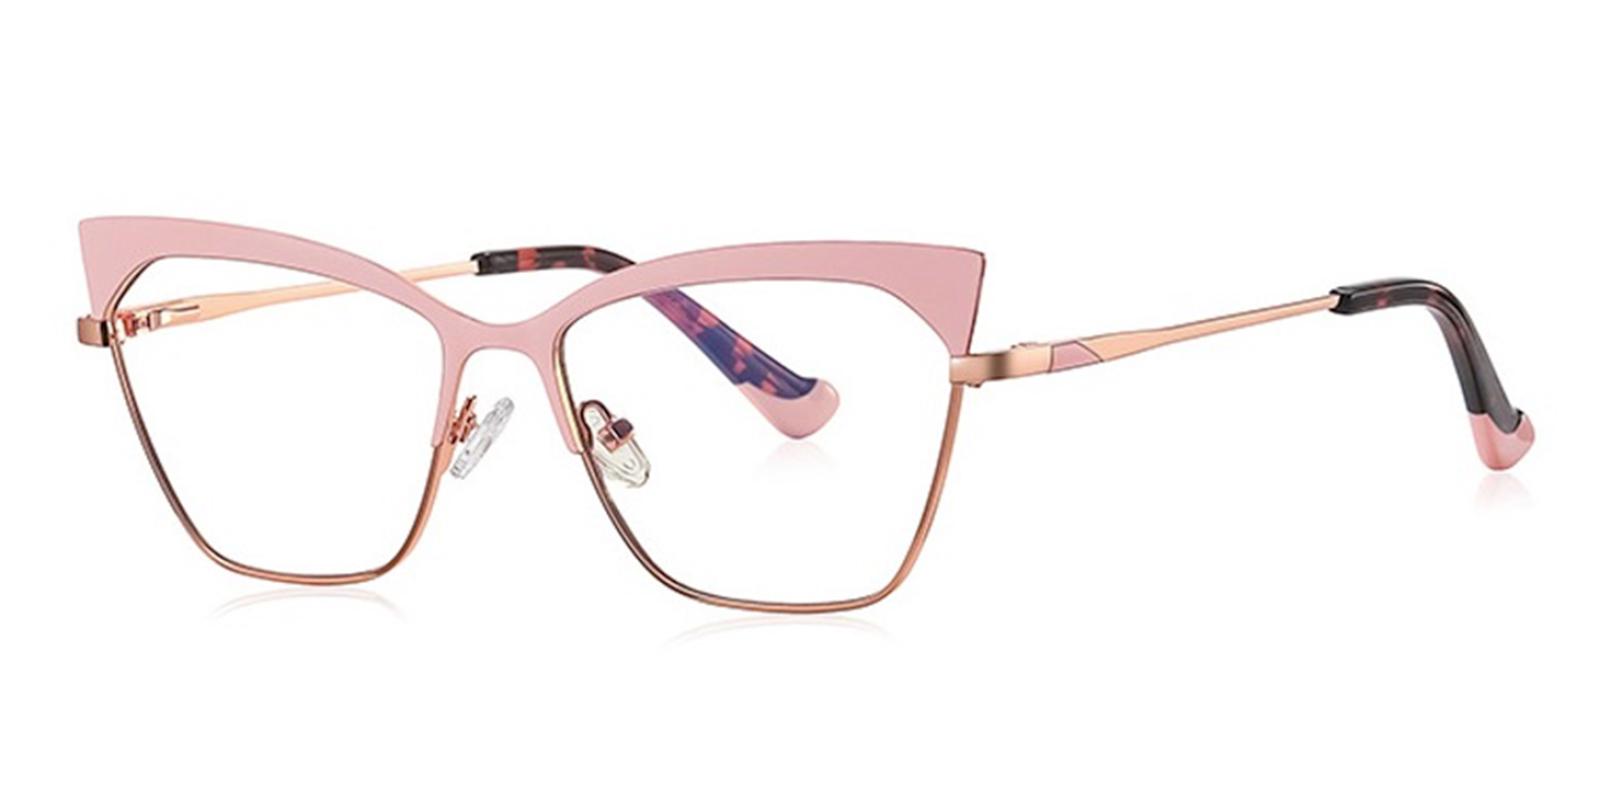 Tradla Rosegold Metal Eyeglasses , NosePads , SpringHinges Frames from ABBE Glasses